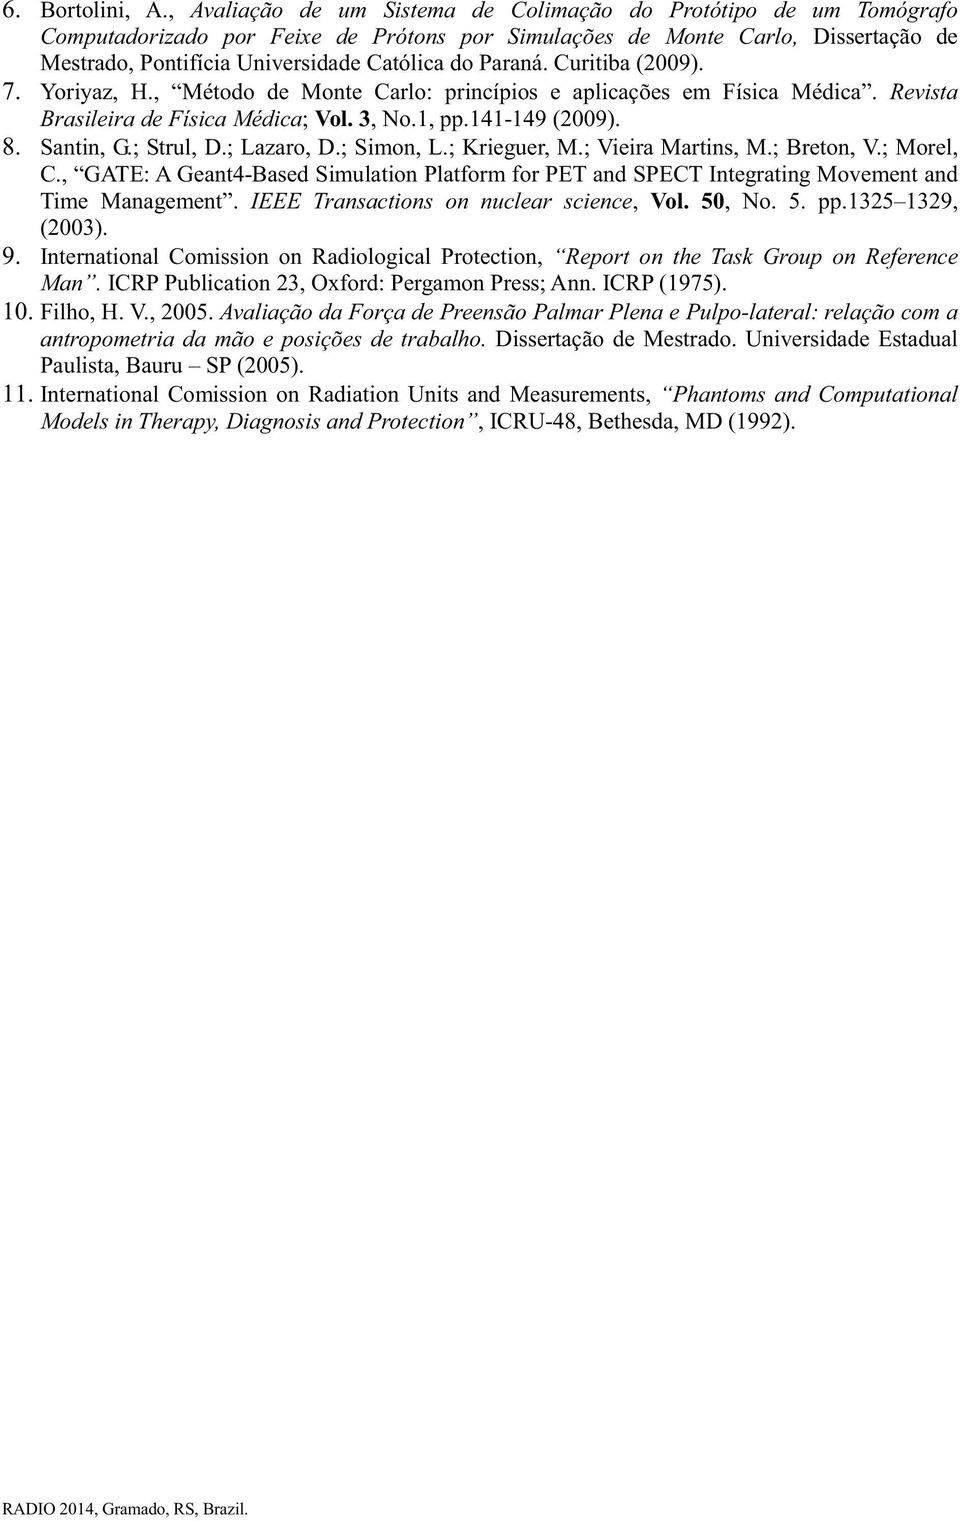 Paraná. Curitiba (2009). 7. Yoriyaz, H., Método de Monte Carlo: princípios e aplicações em Física Médica. Revista Brasileira de Física Médica; Vol. 3, No.1, pp.141-149 (2009). 8. Santin, G.; Strul, D.